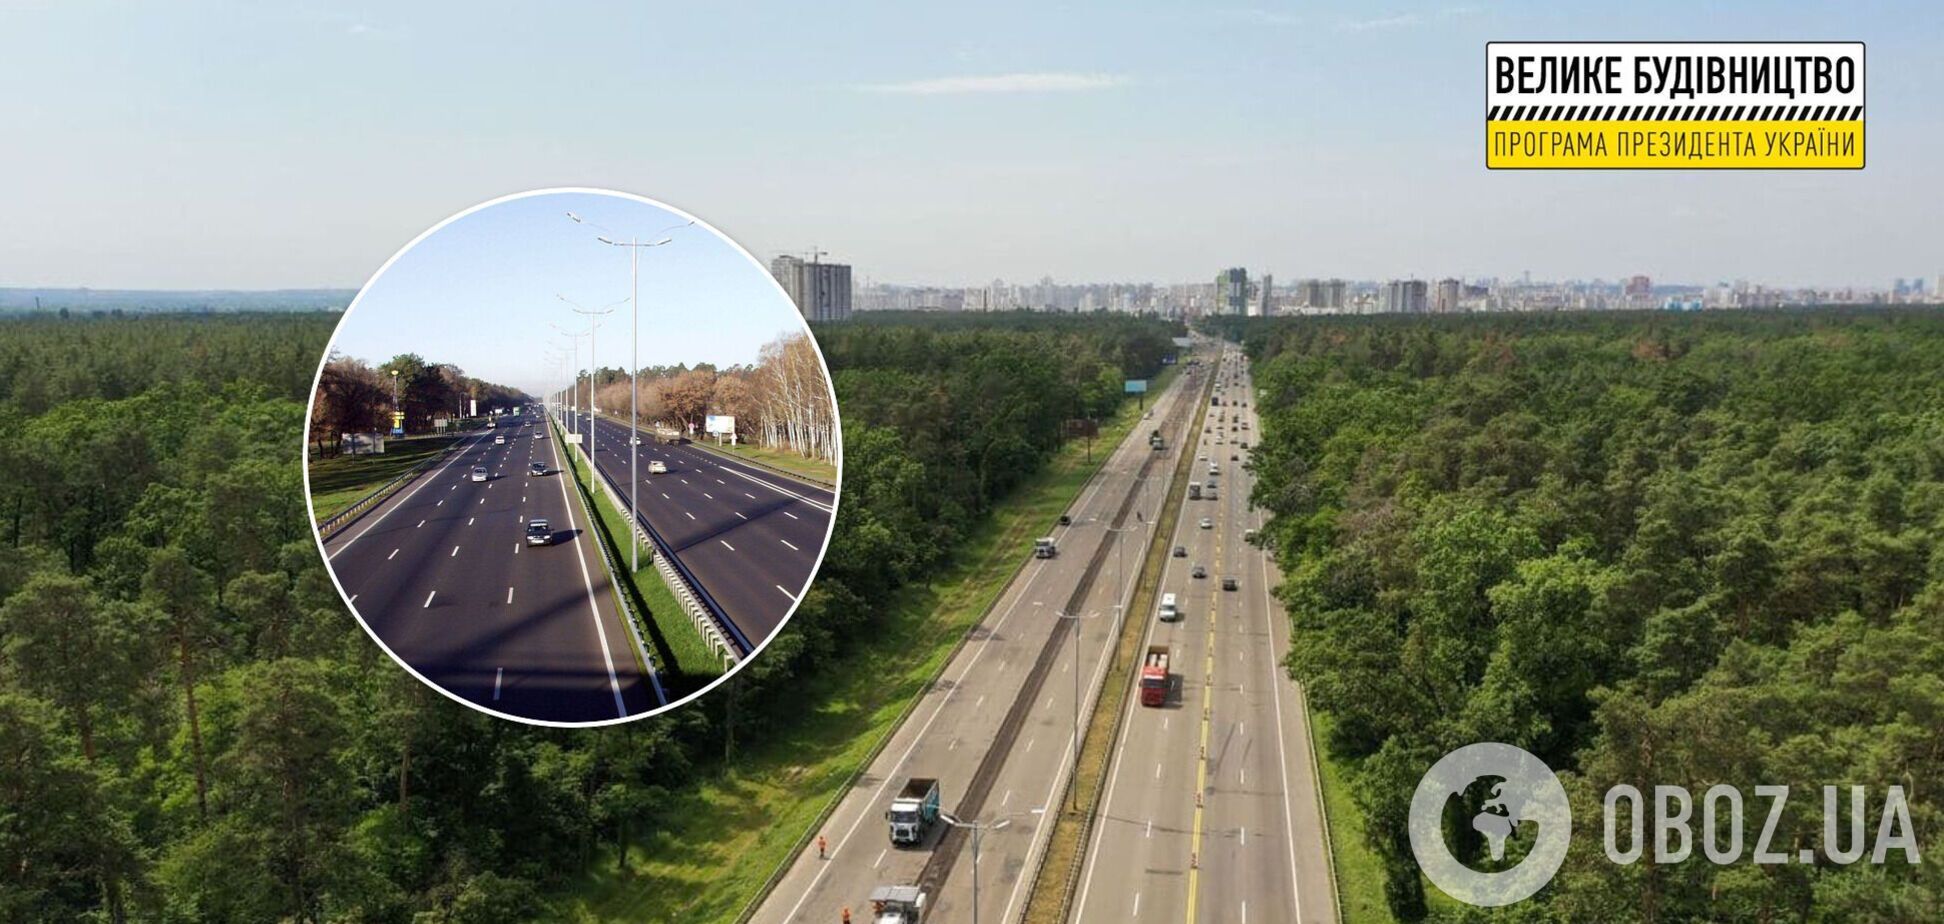 'Велике будівництво': ремонт на трасі Київ – Бориспіль завершився